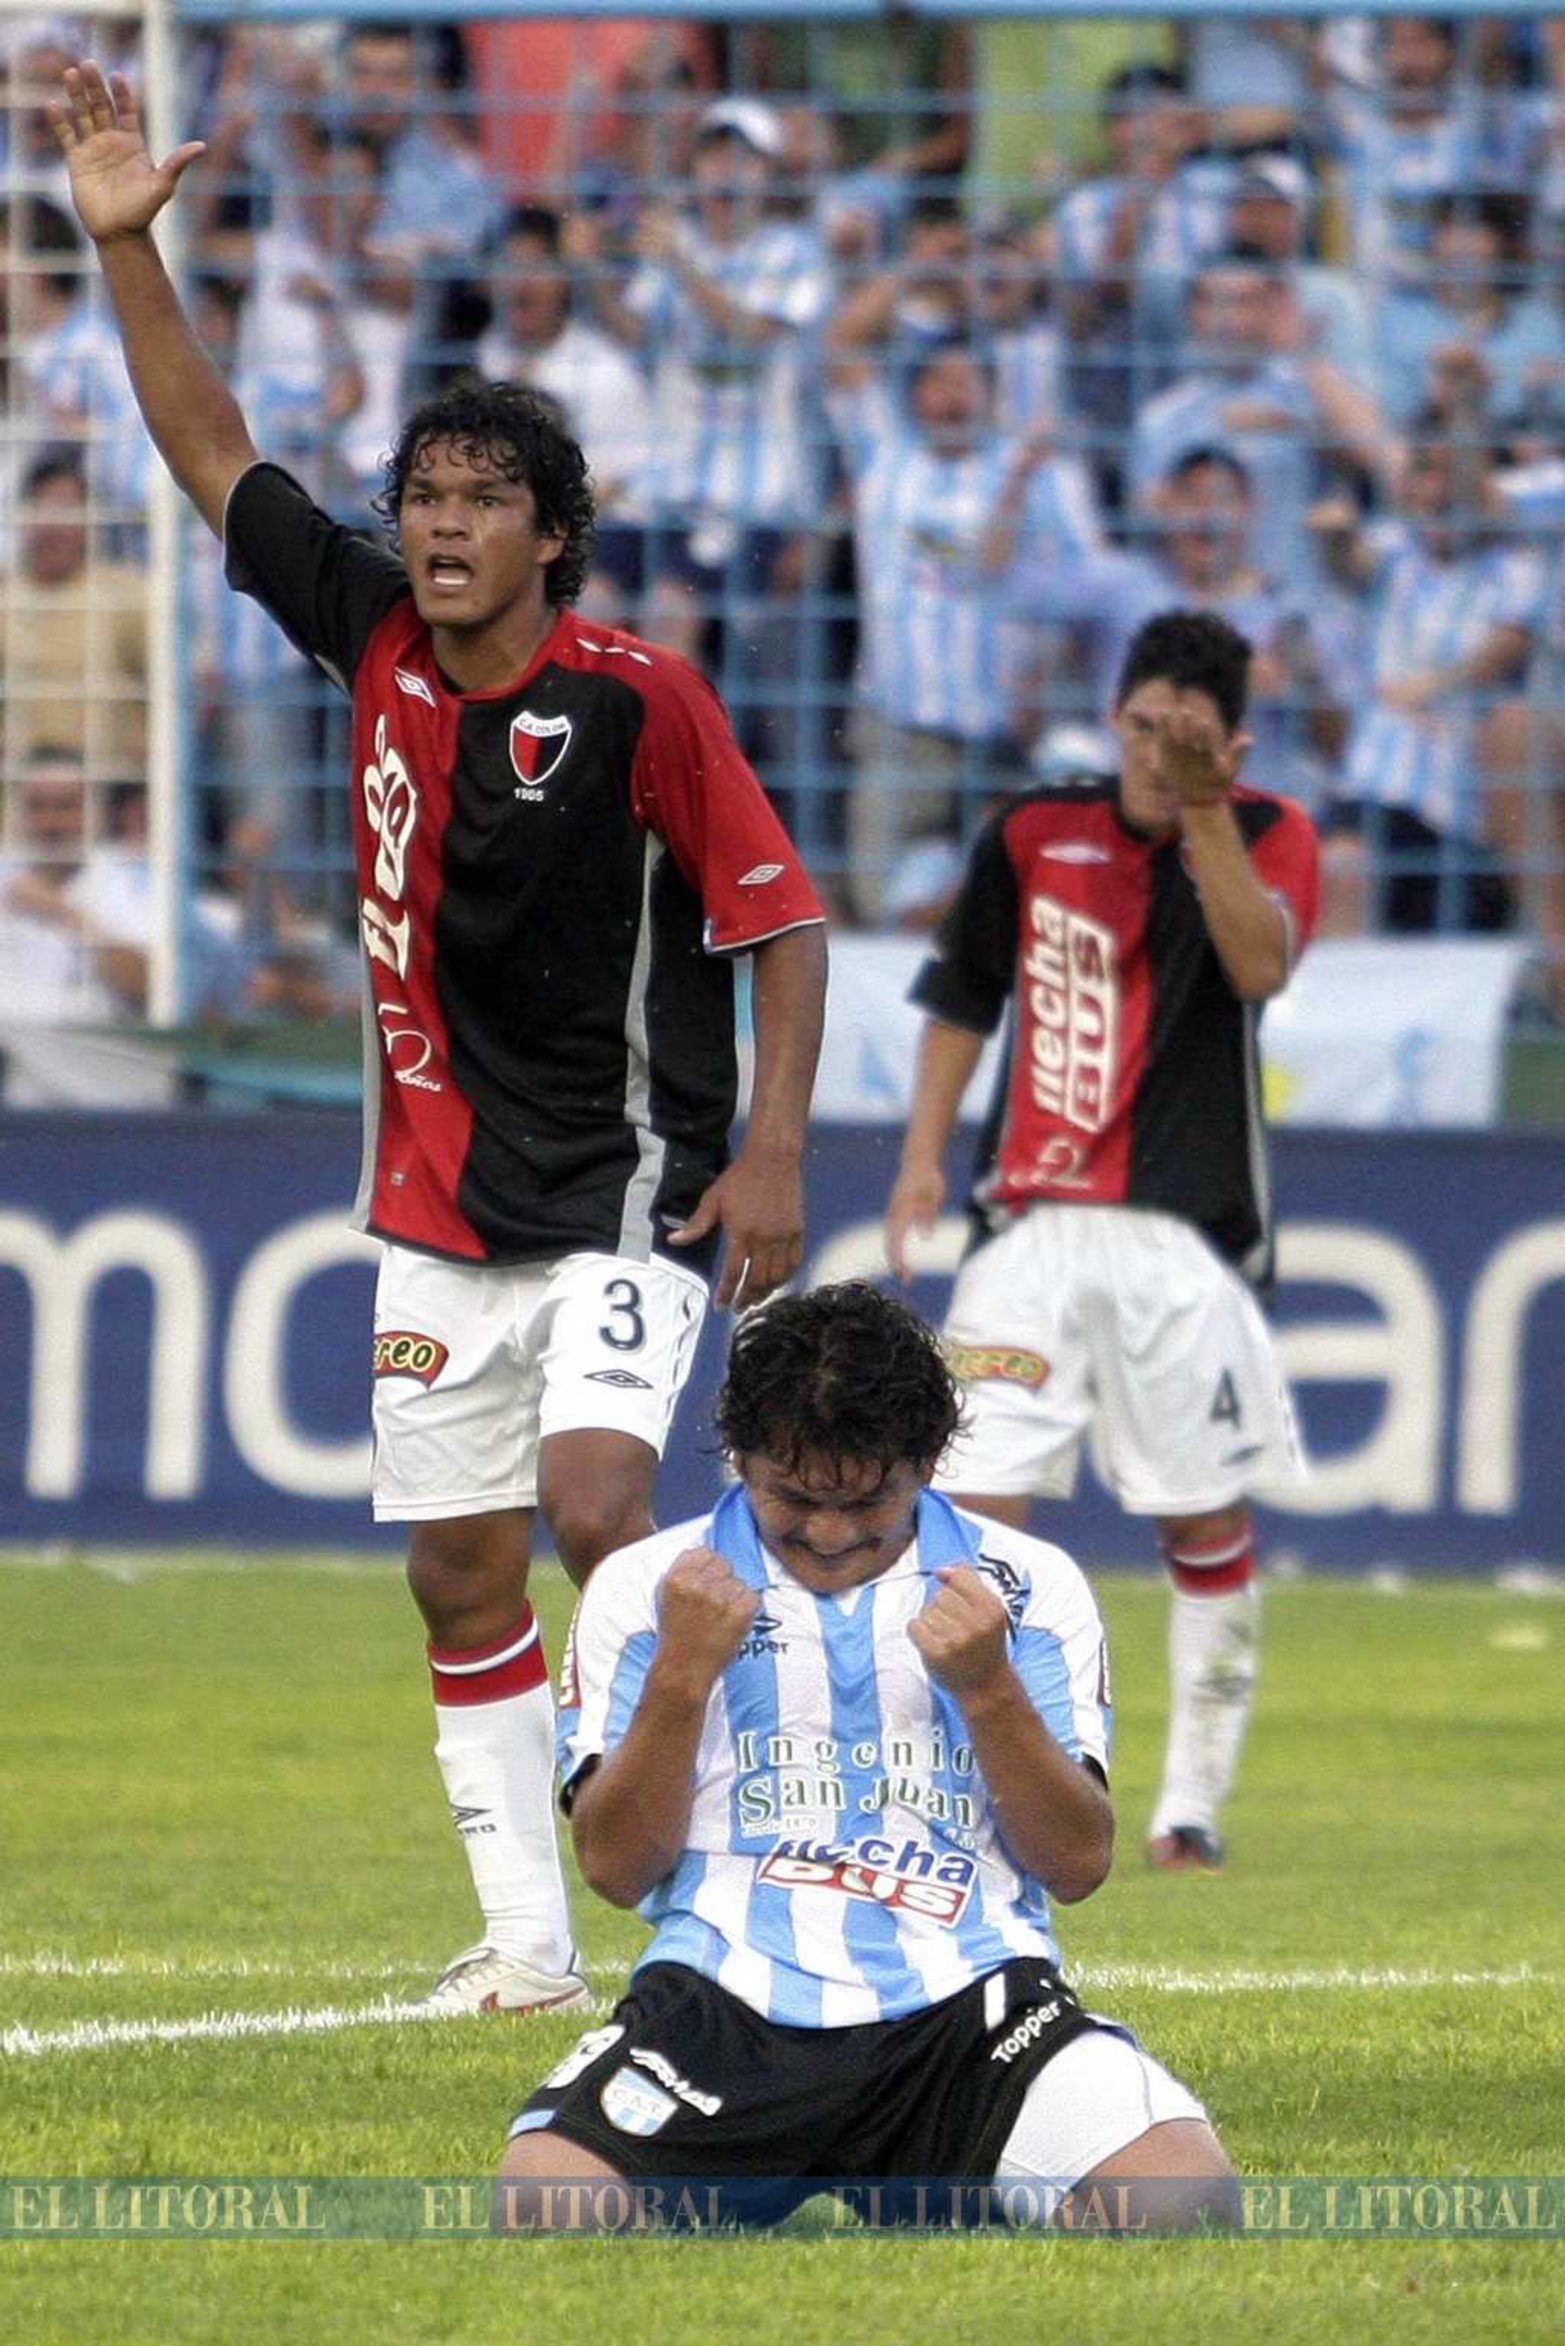 2009. 6 de diciembre. El banco de imágenes de diario El Litoral encontramos esta foto. Raúl Candia e Ismael Quiles se lamentan. El "Pulga" festeja el segundo gol de Atlético Tucumán.